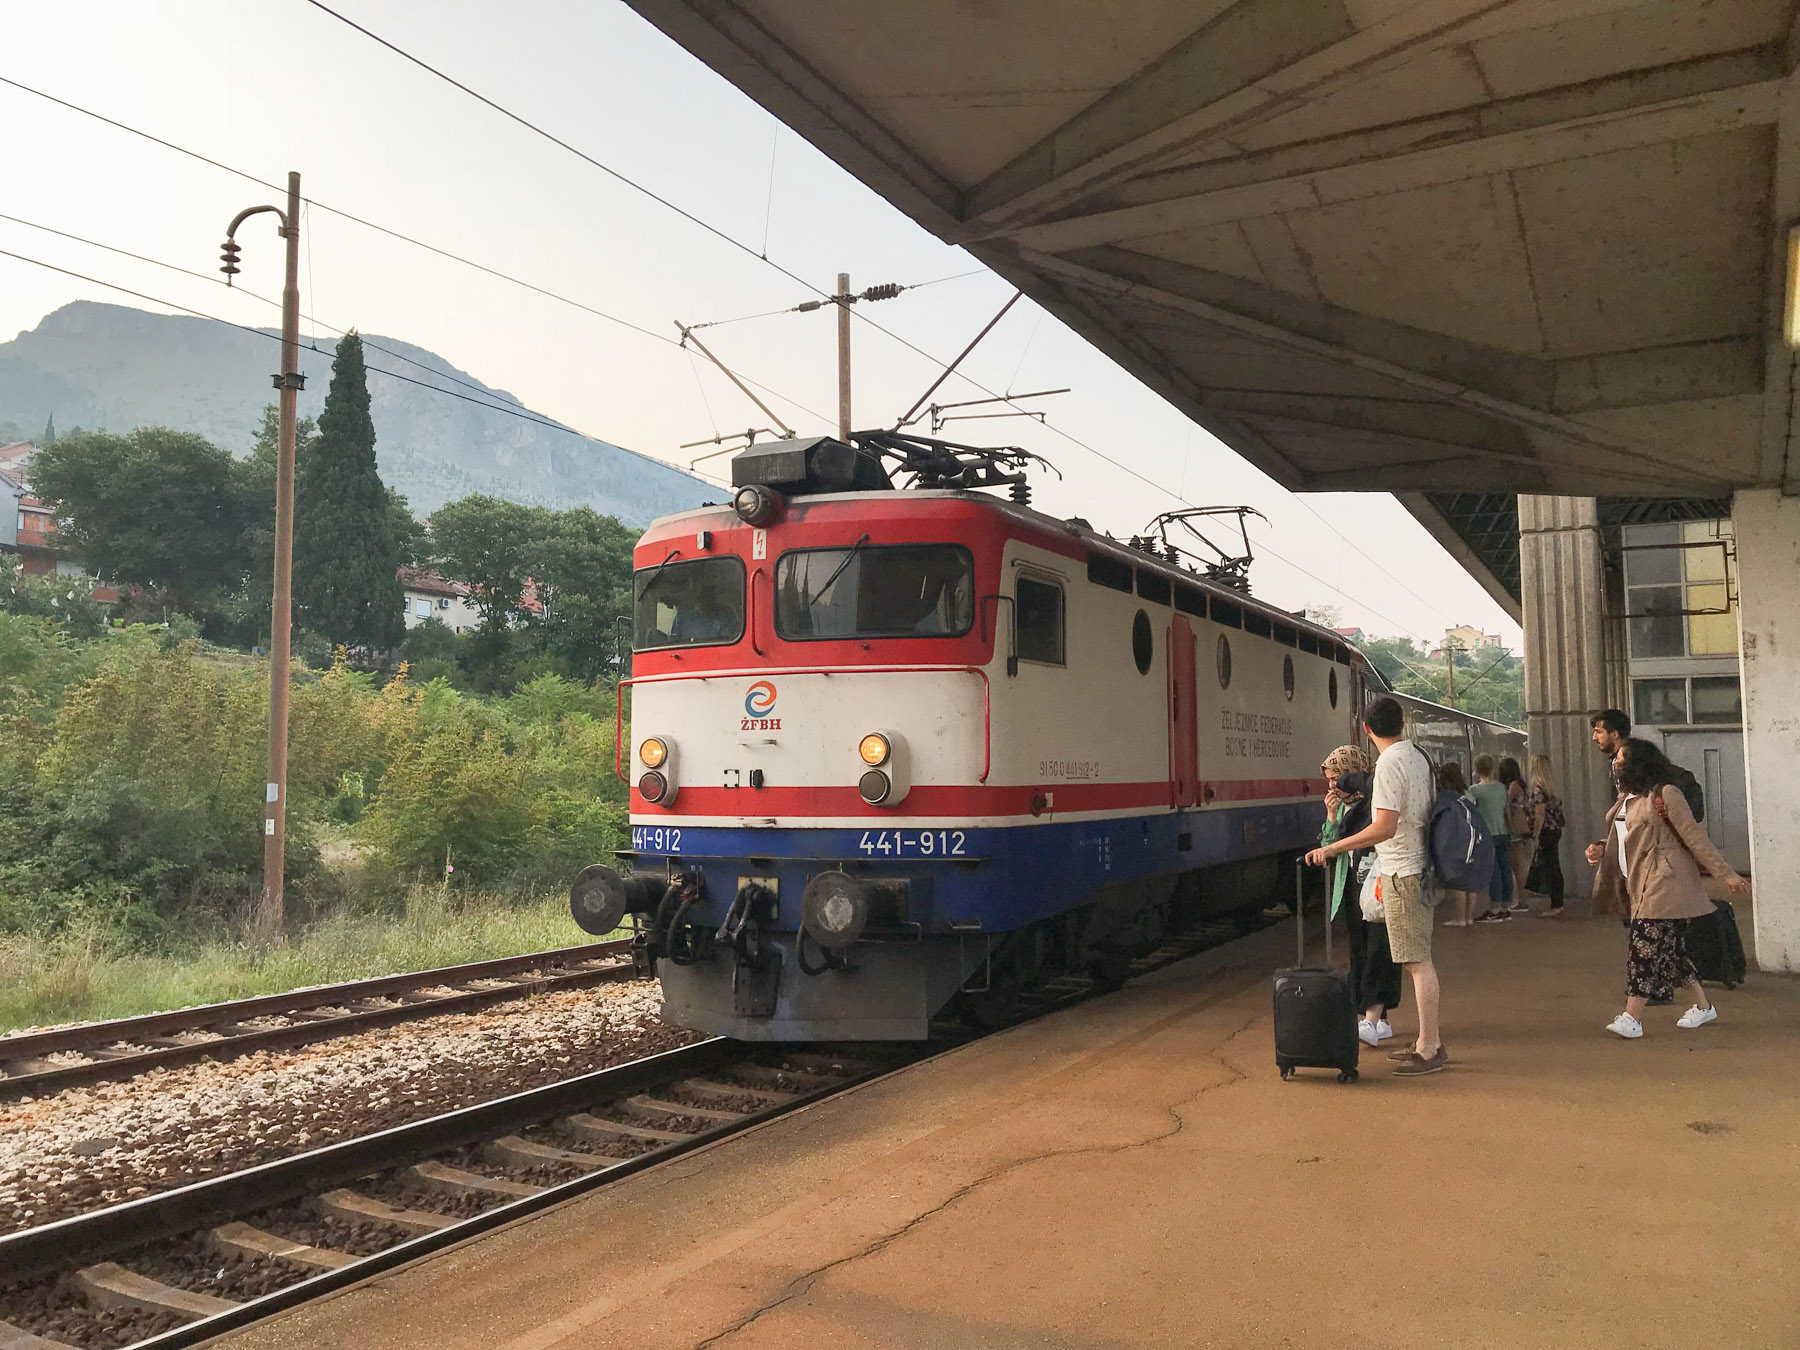 The train from Mostar to Sarajevo